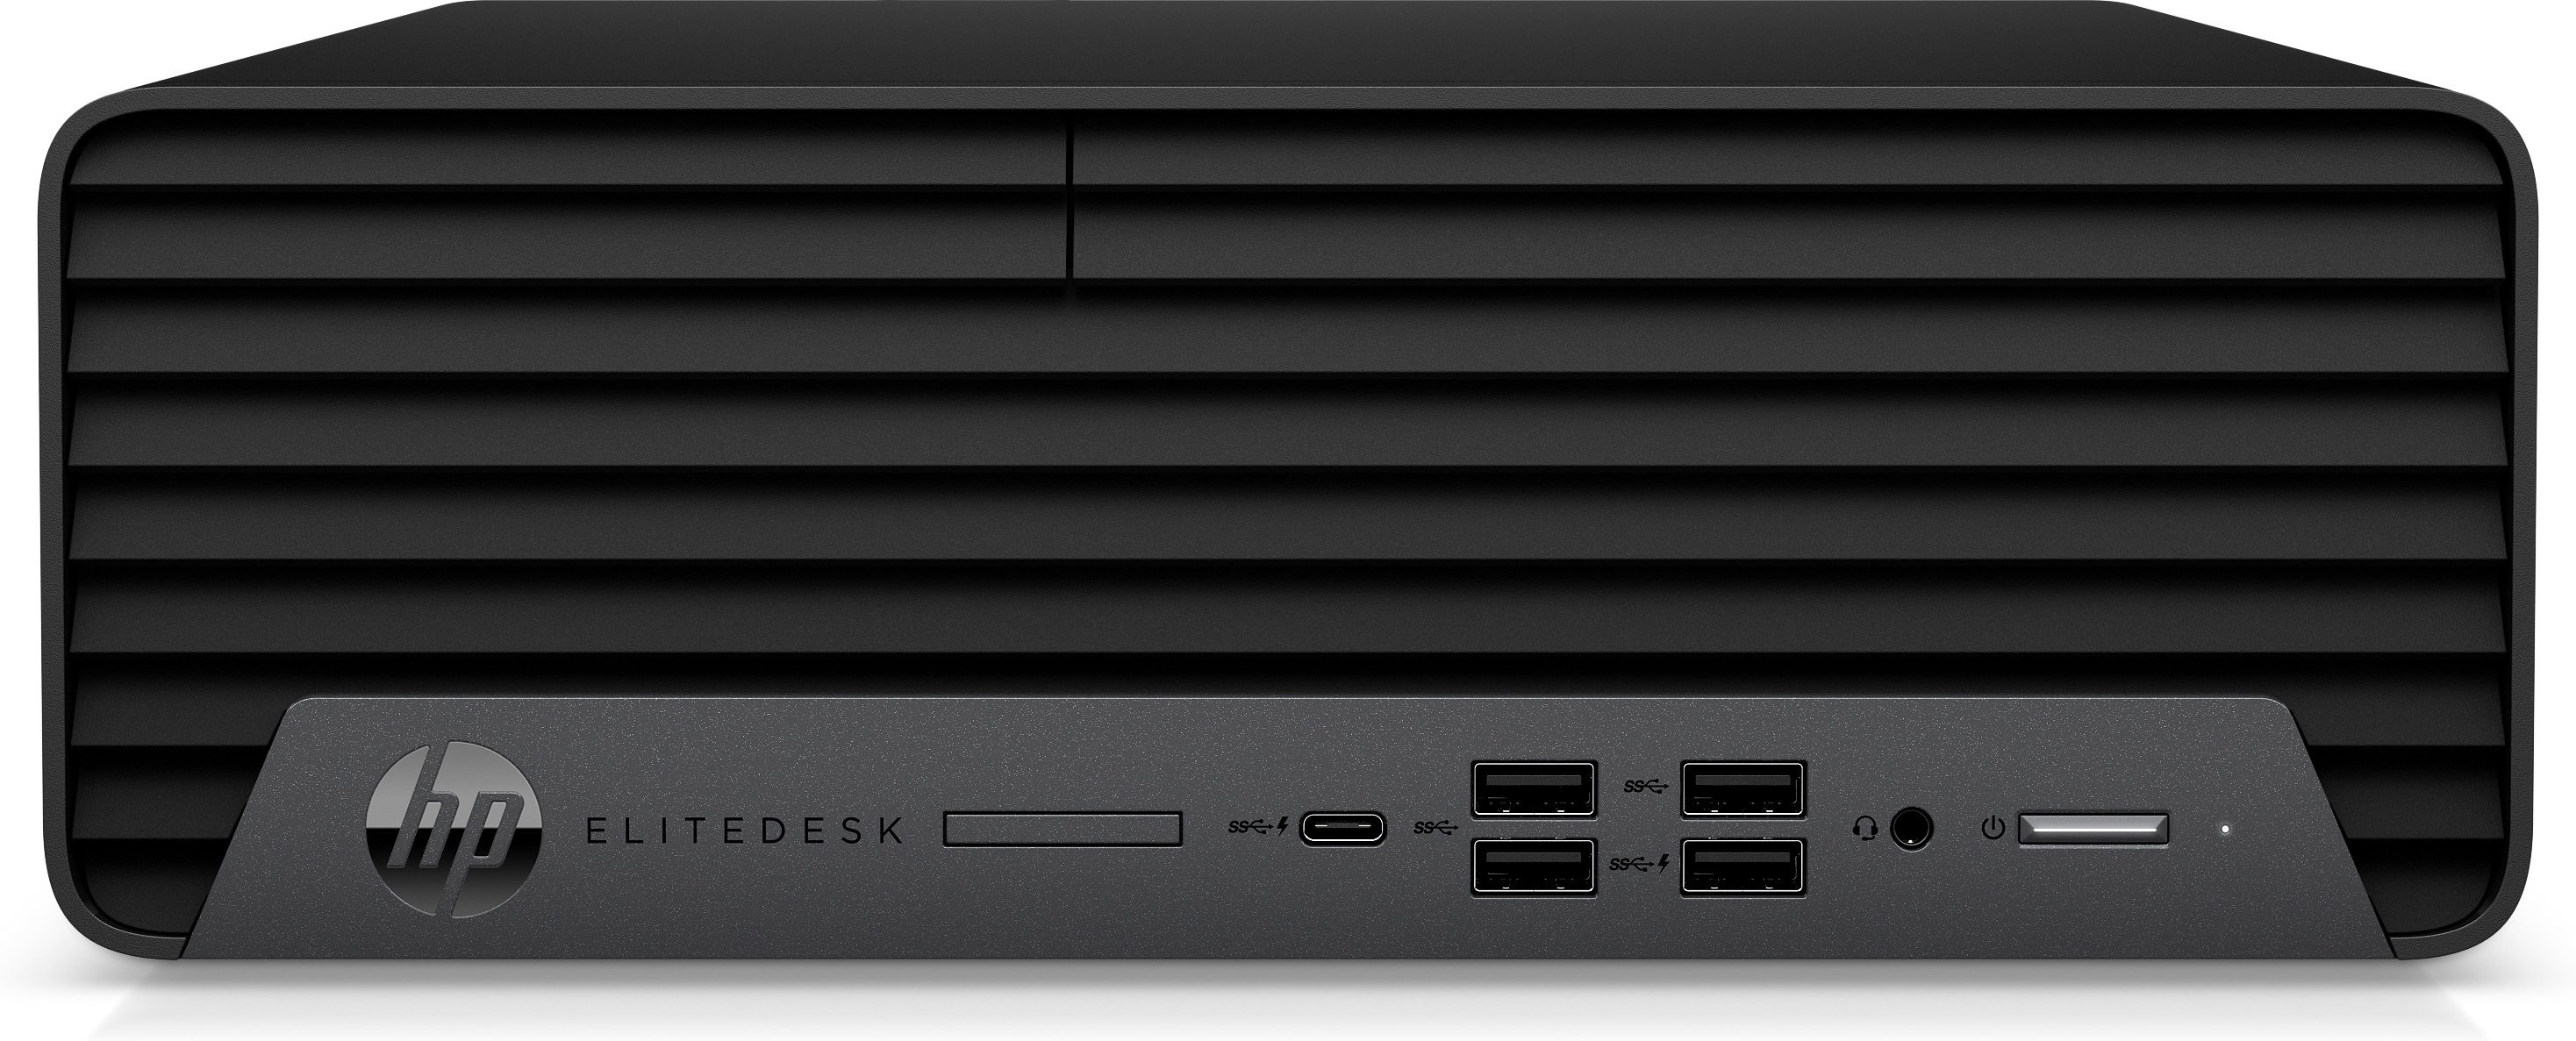 HP EliteDesk 800 805 G6